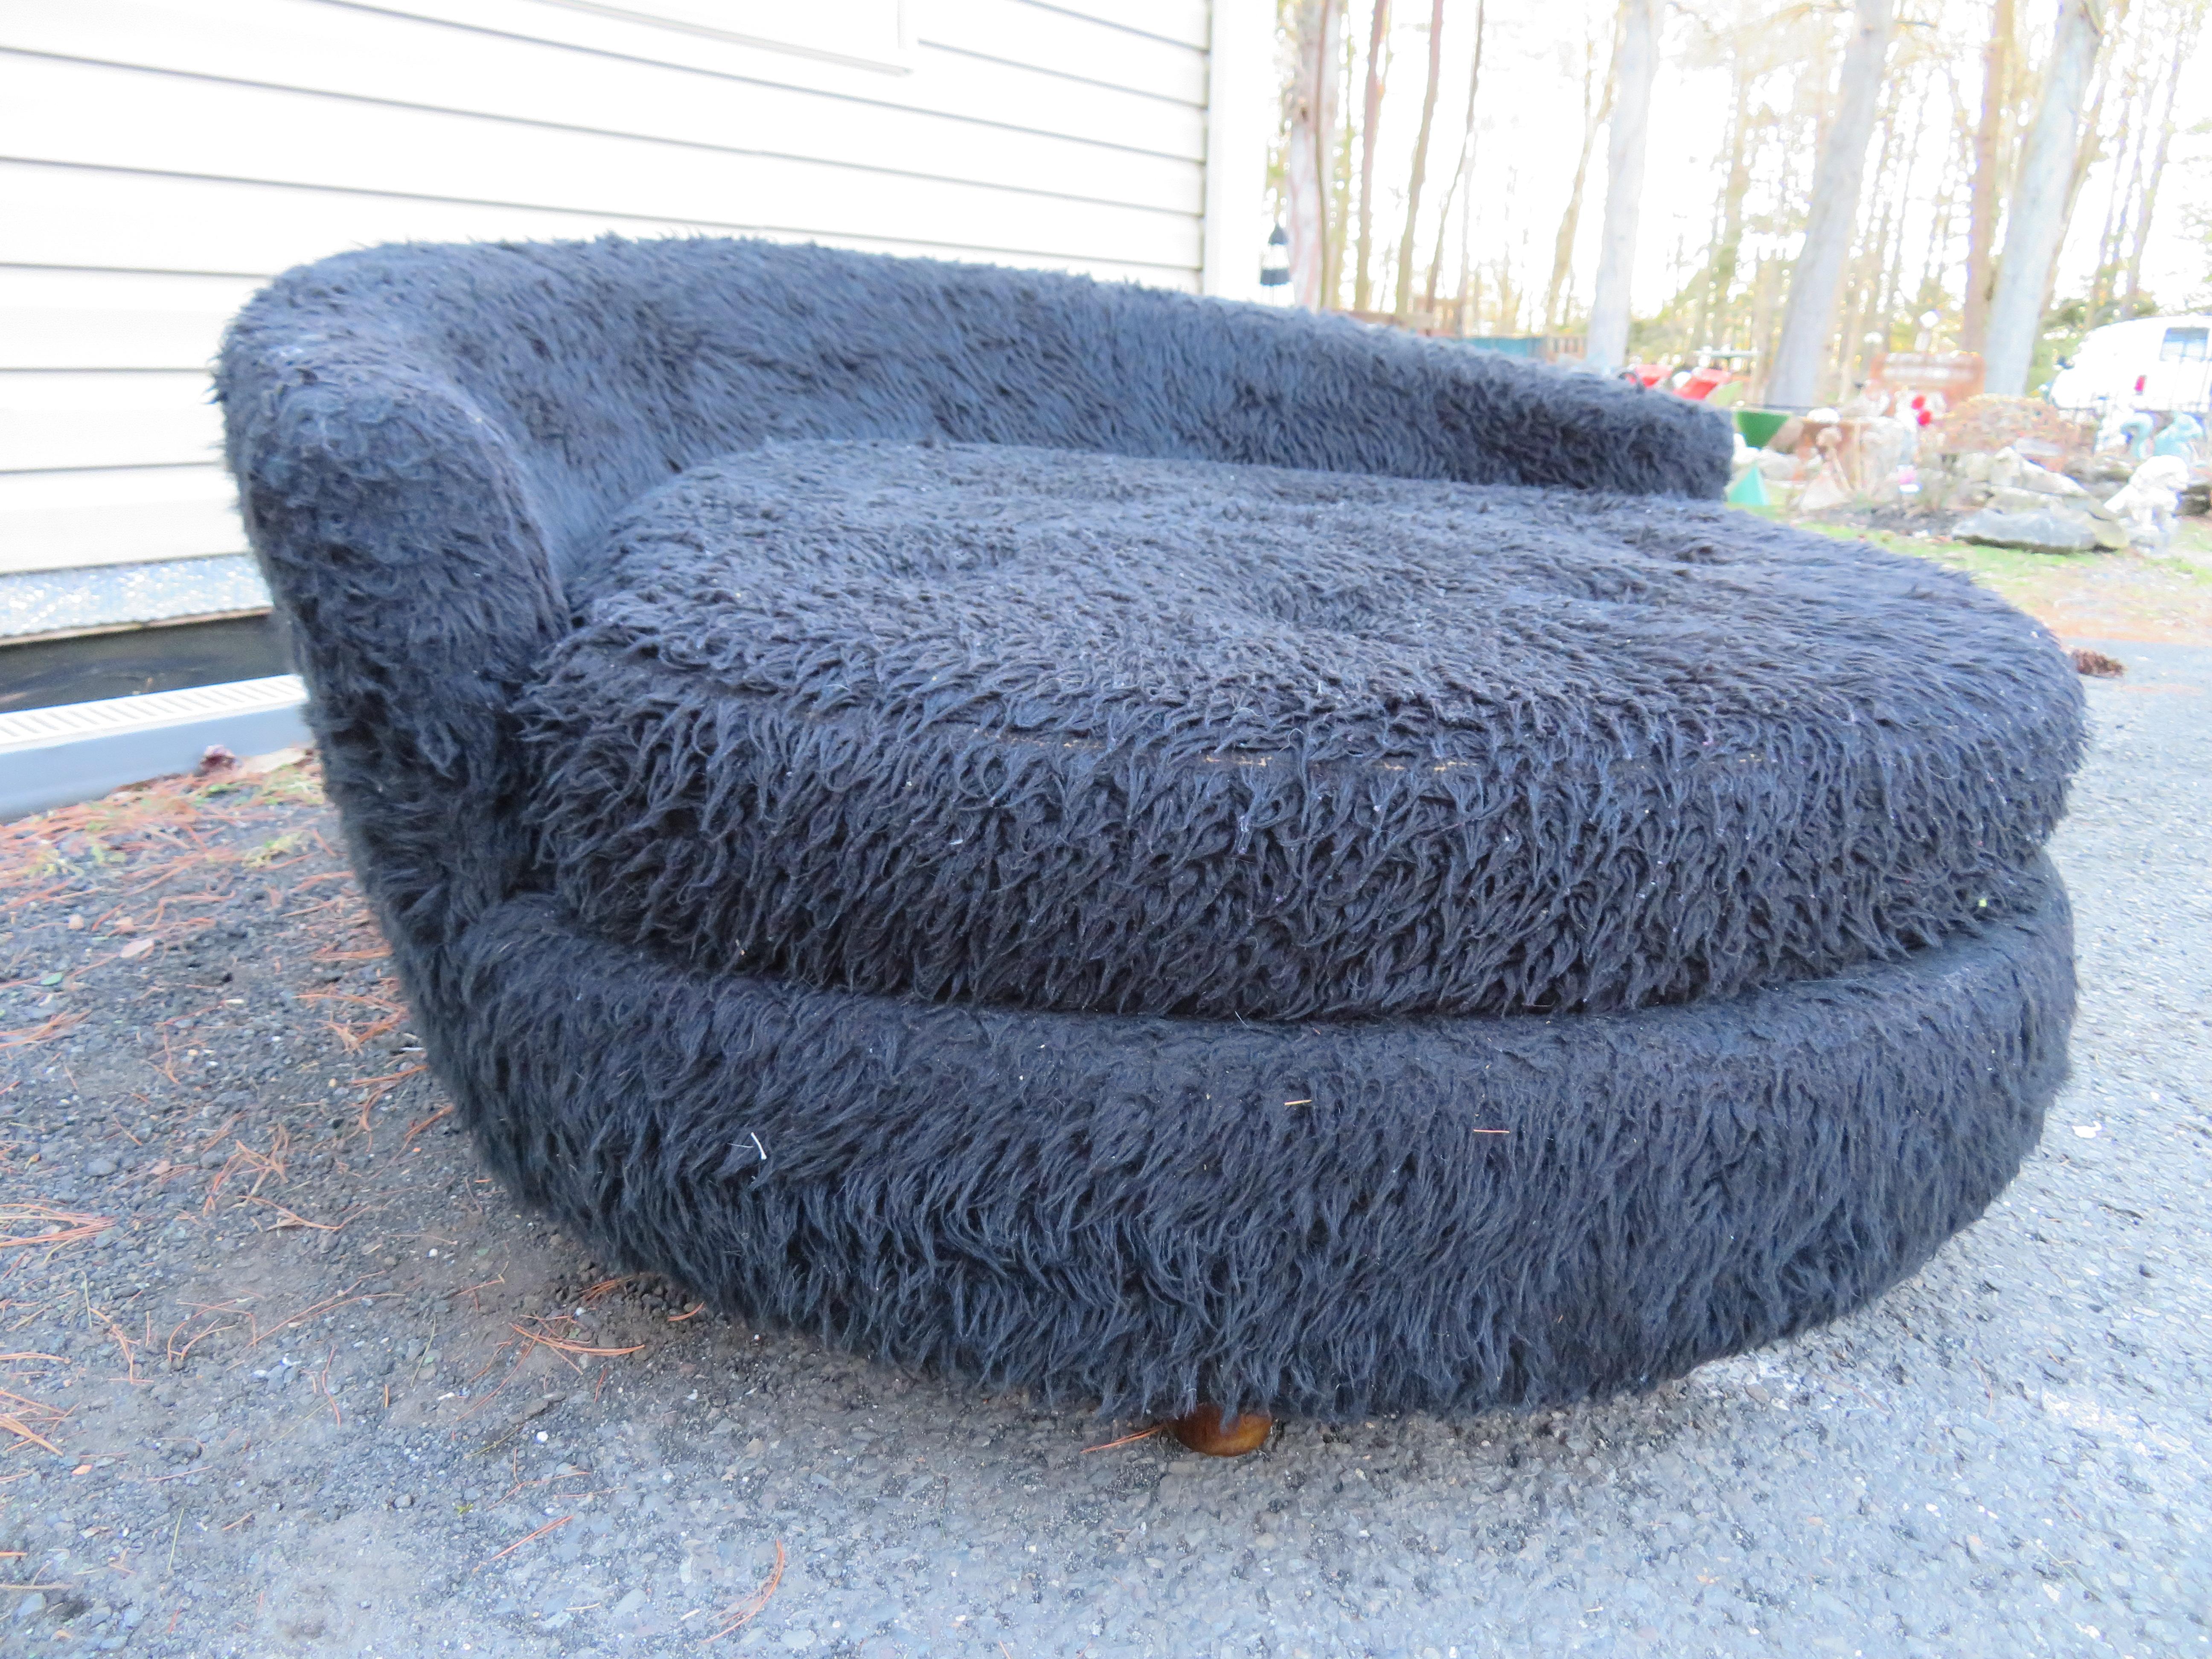 Amusante chaise longue circulaire Adrian Pearsall. Cette chaise pelucheuse a conservé sa fourrure originale de grizzly et devra être retapissée. Elle mesure 24